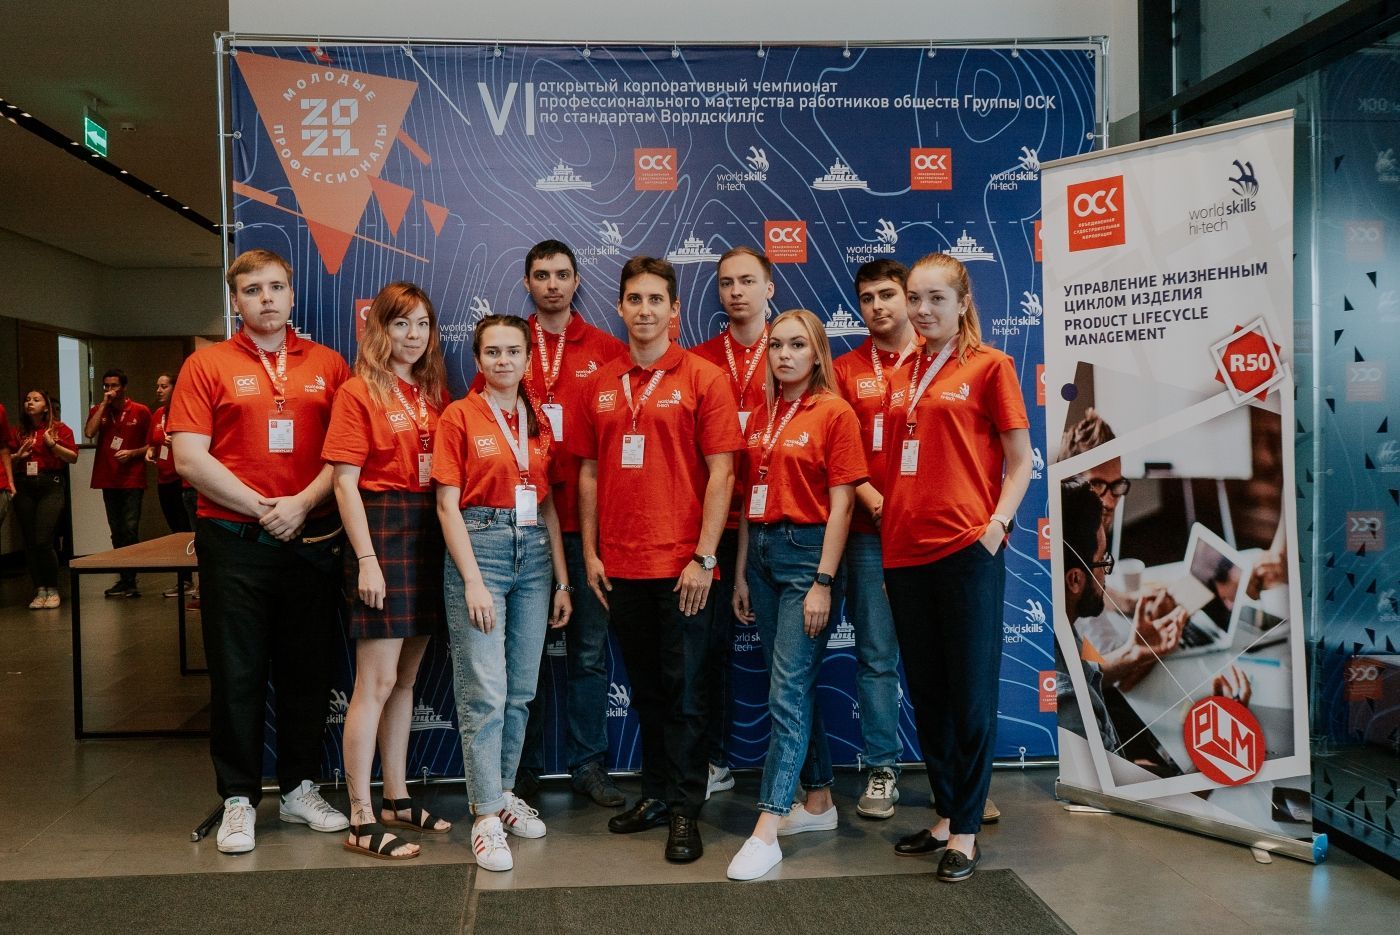 В Астрахани стартовал VI корпоративный чемпионат Объединенной судостроительной корпорации профессионального мастерства по стандартам WorldSkills (Ворлдскиллс).